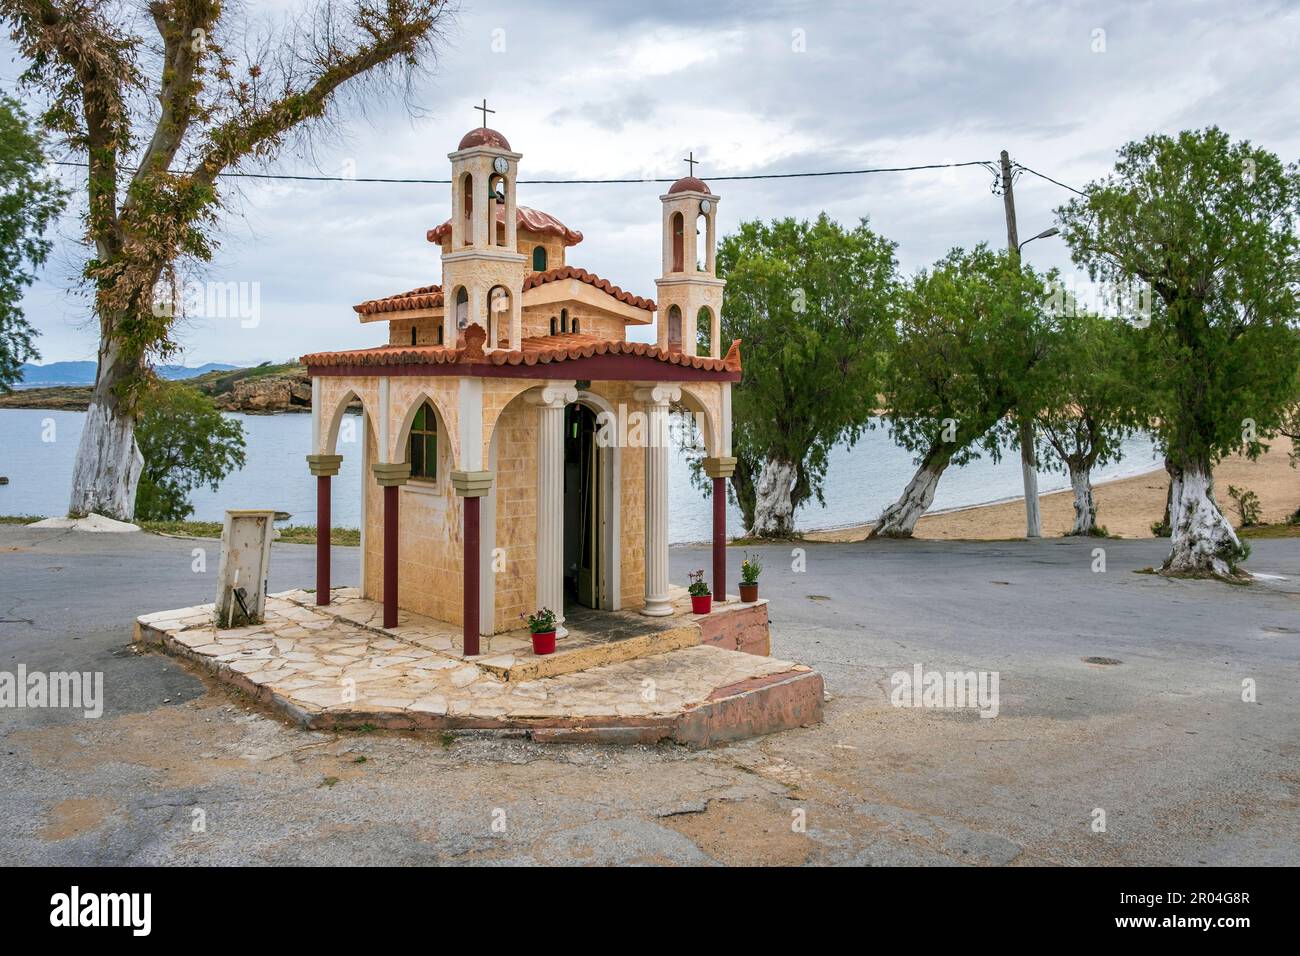 Die wunderschöne kleine Kirche in der Nähe des Strandes am Agii Apostoli in der Nähe von Chania, Kreta, Griechenland Stockfoto